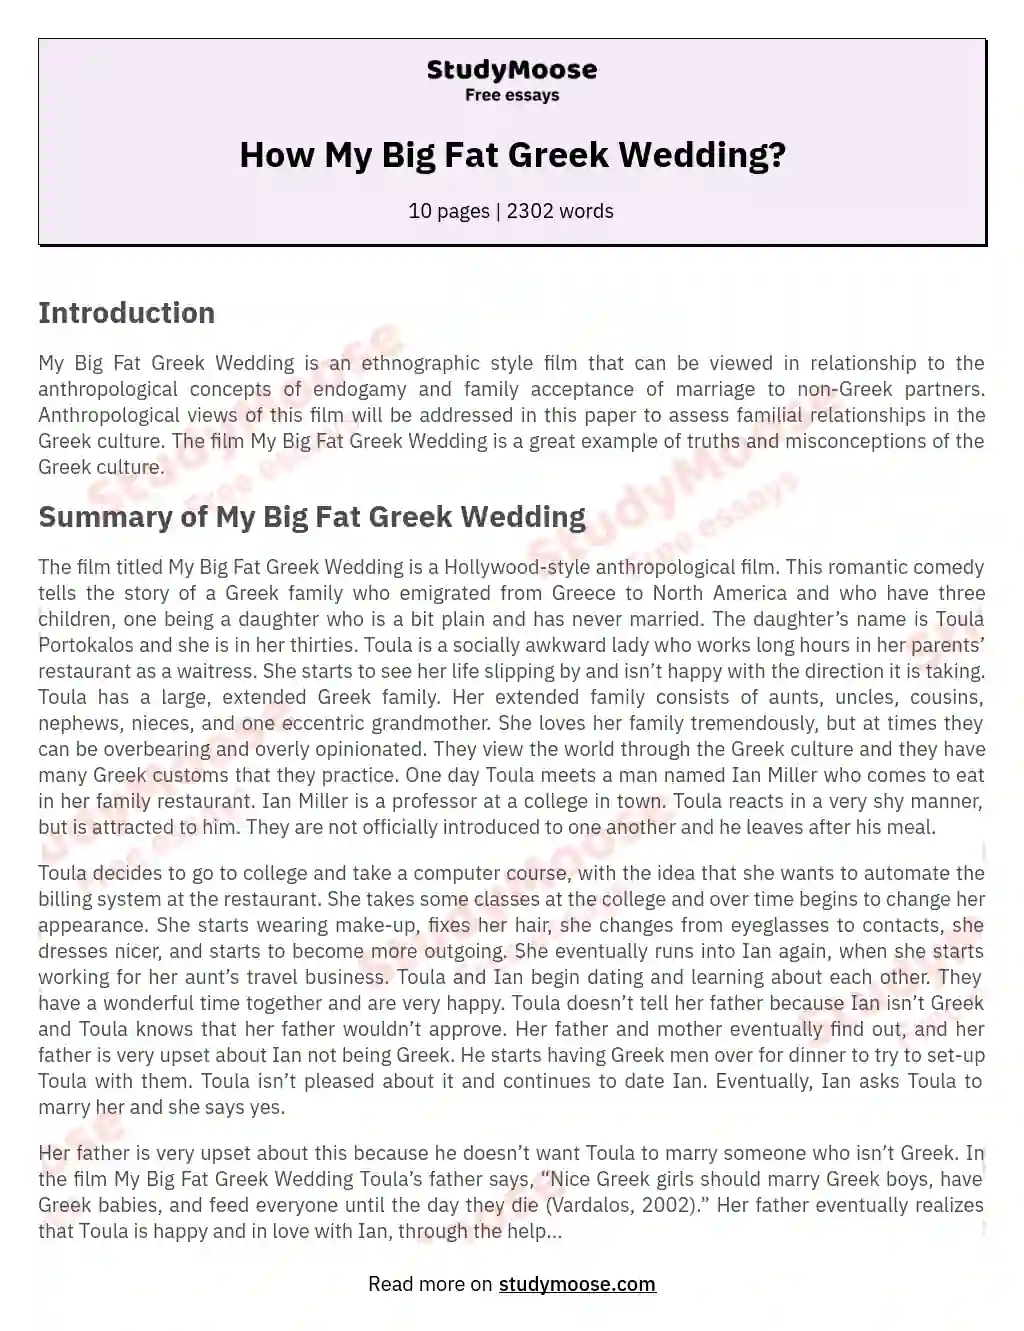 How My Big Fat Greek Wedding? essay